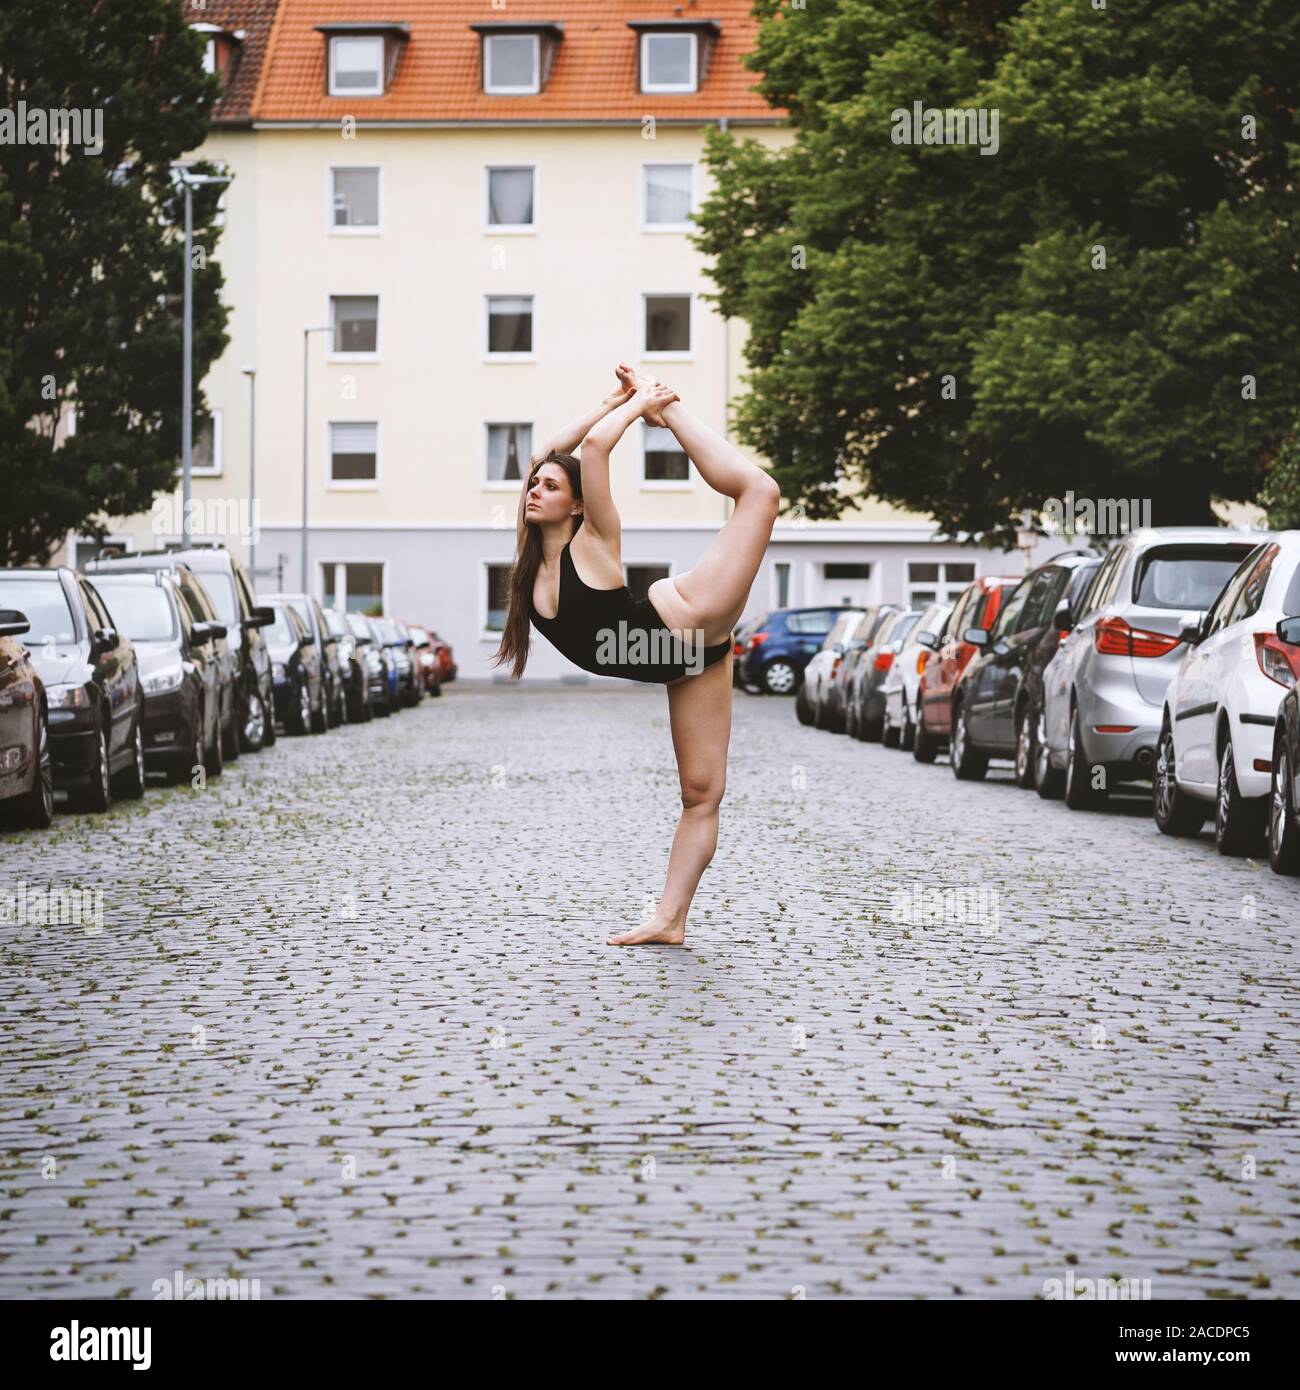 Unbeschwerte junge Frau Ballet Dancer Ausübung auf Straße der Stadt - städtische Ballerina tragen leotard zeigt Flexibilität und Lebendigkeit in Yoga pose Stockfoto